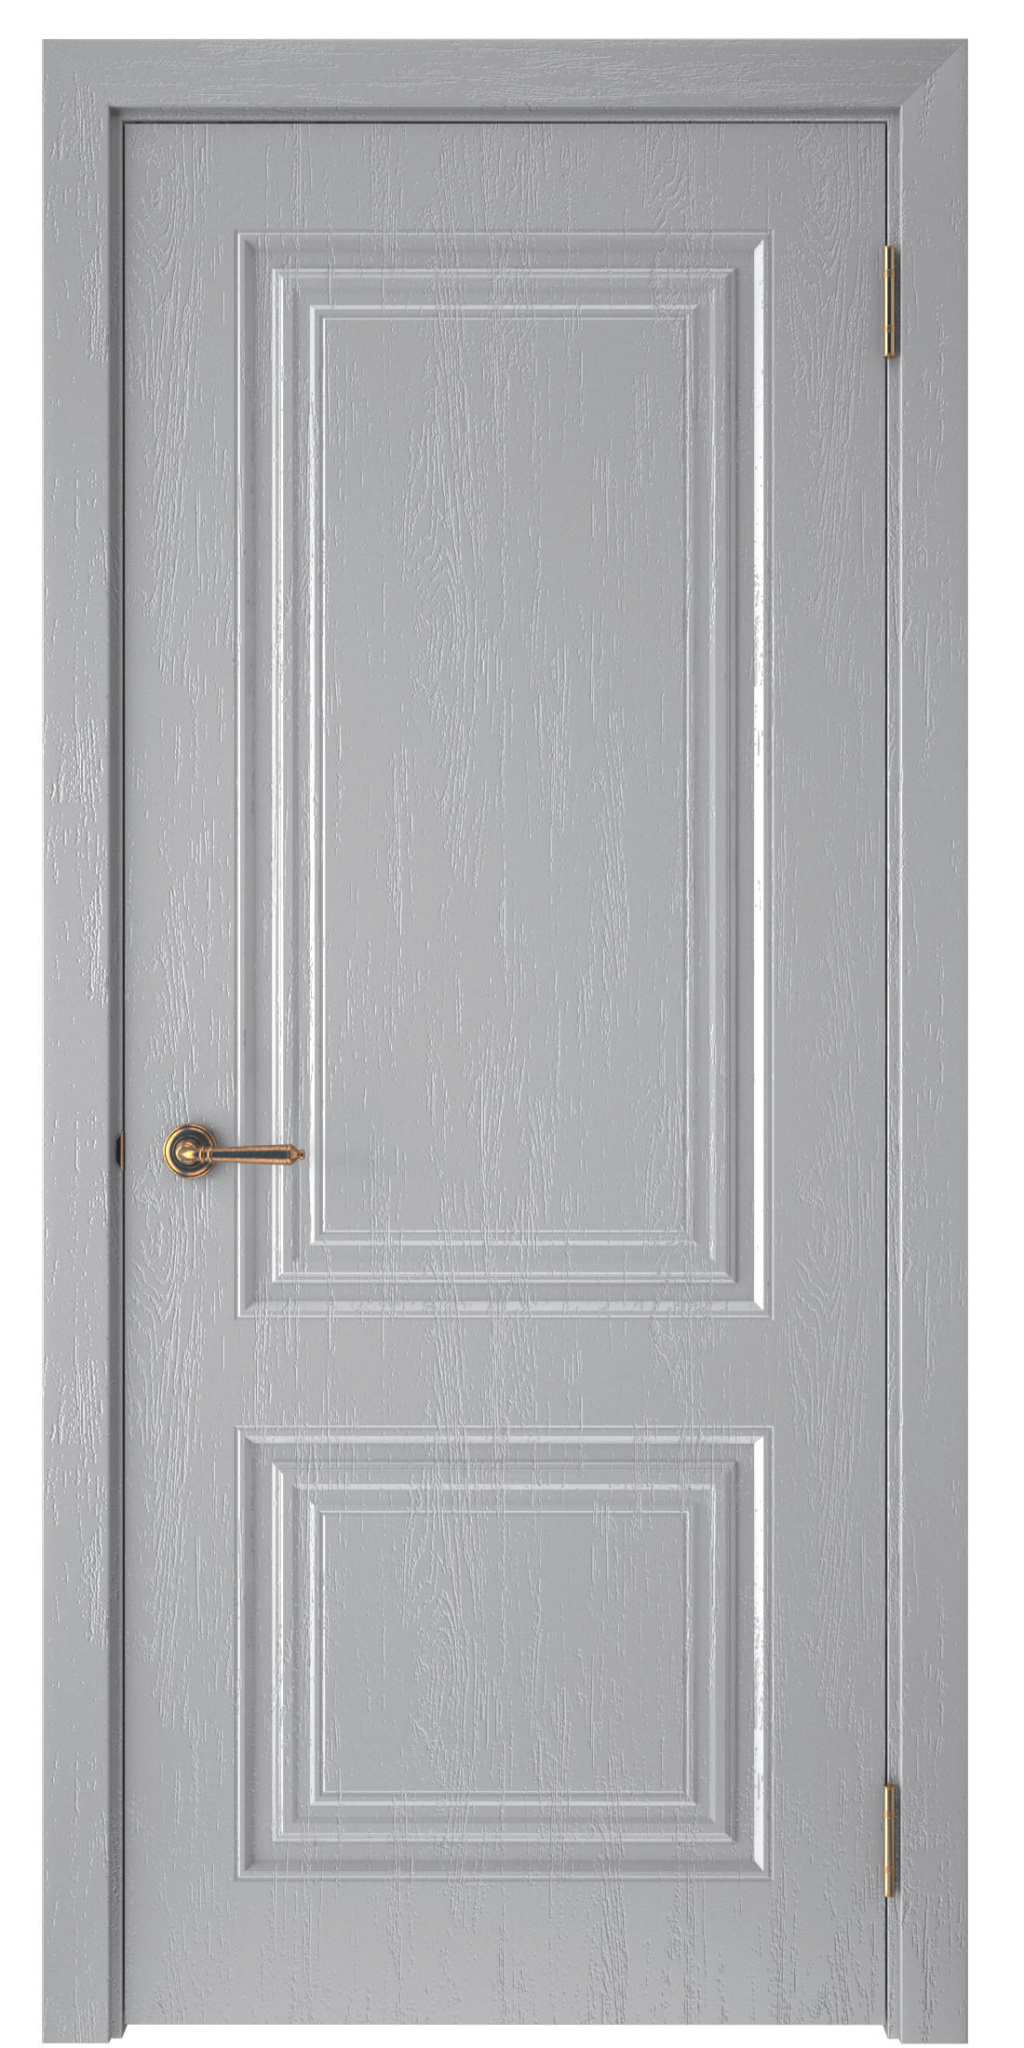 ЕвроОпт Межкомнатная дверь Сканди 2 ДГ, арт. 17574 - фото №1